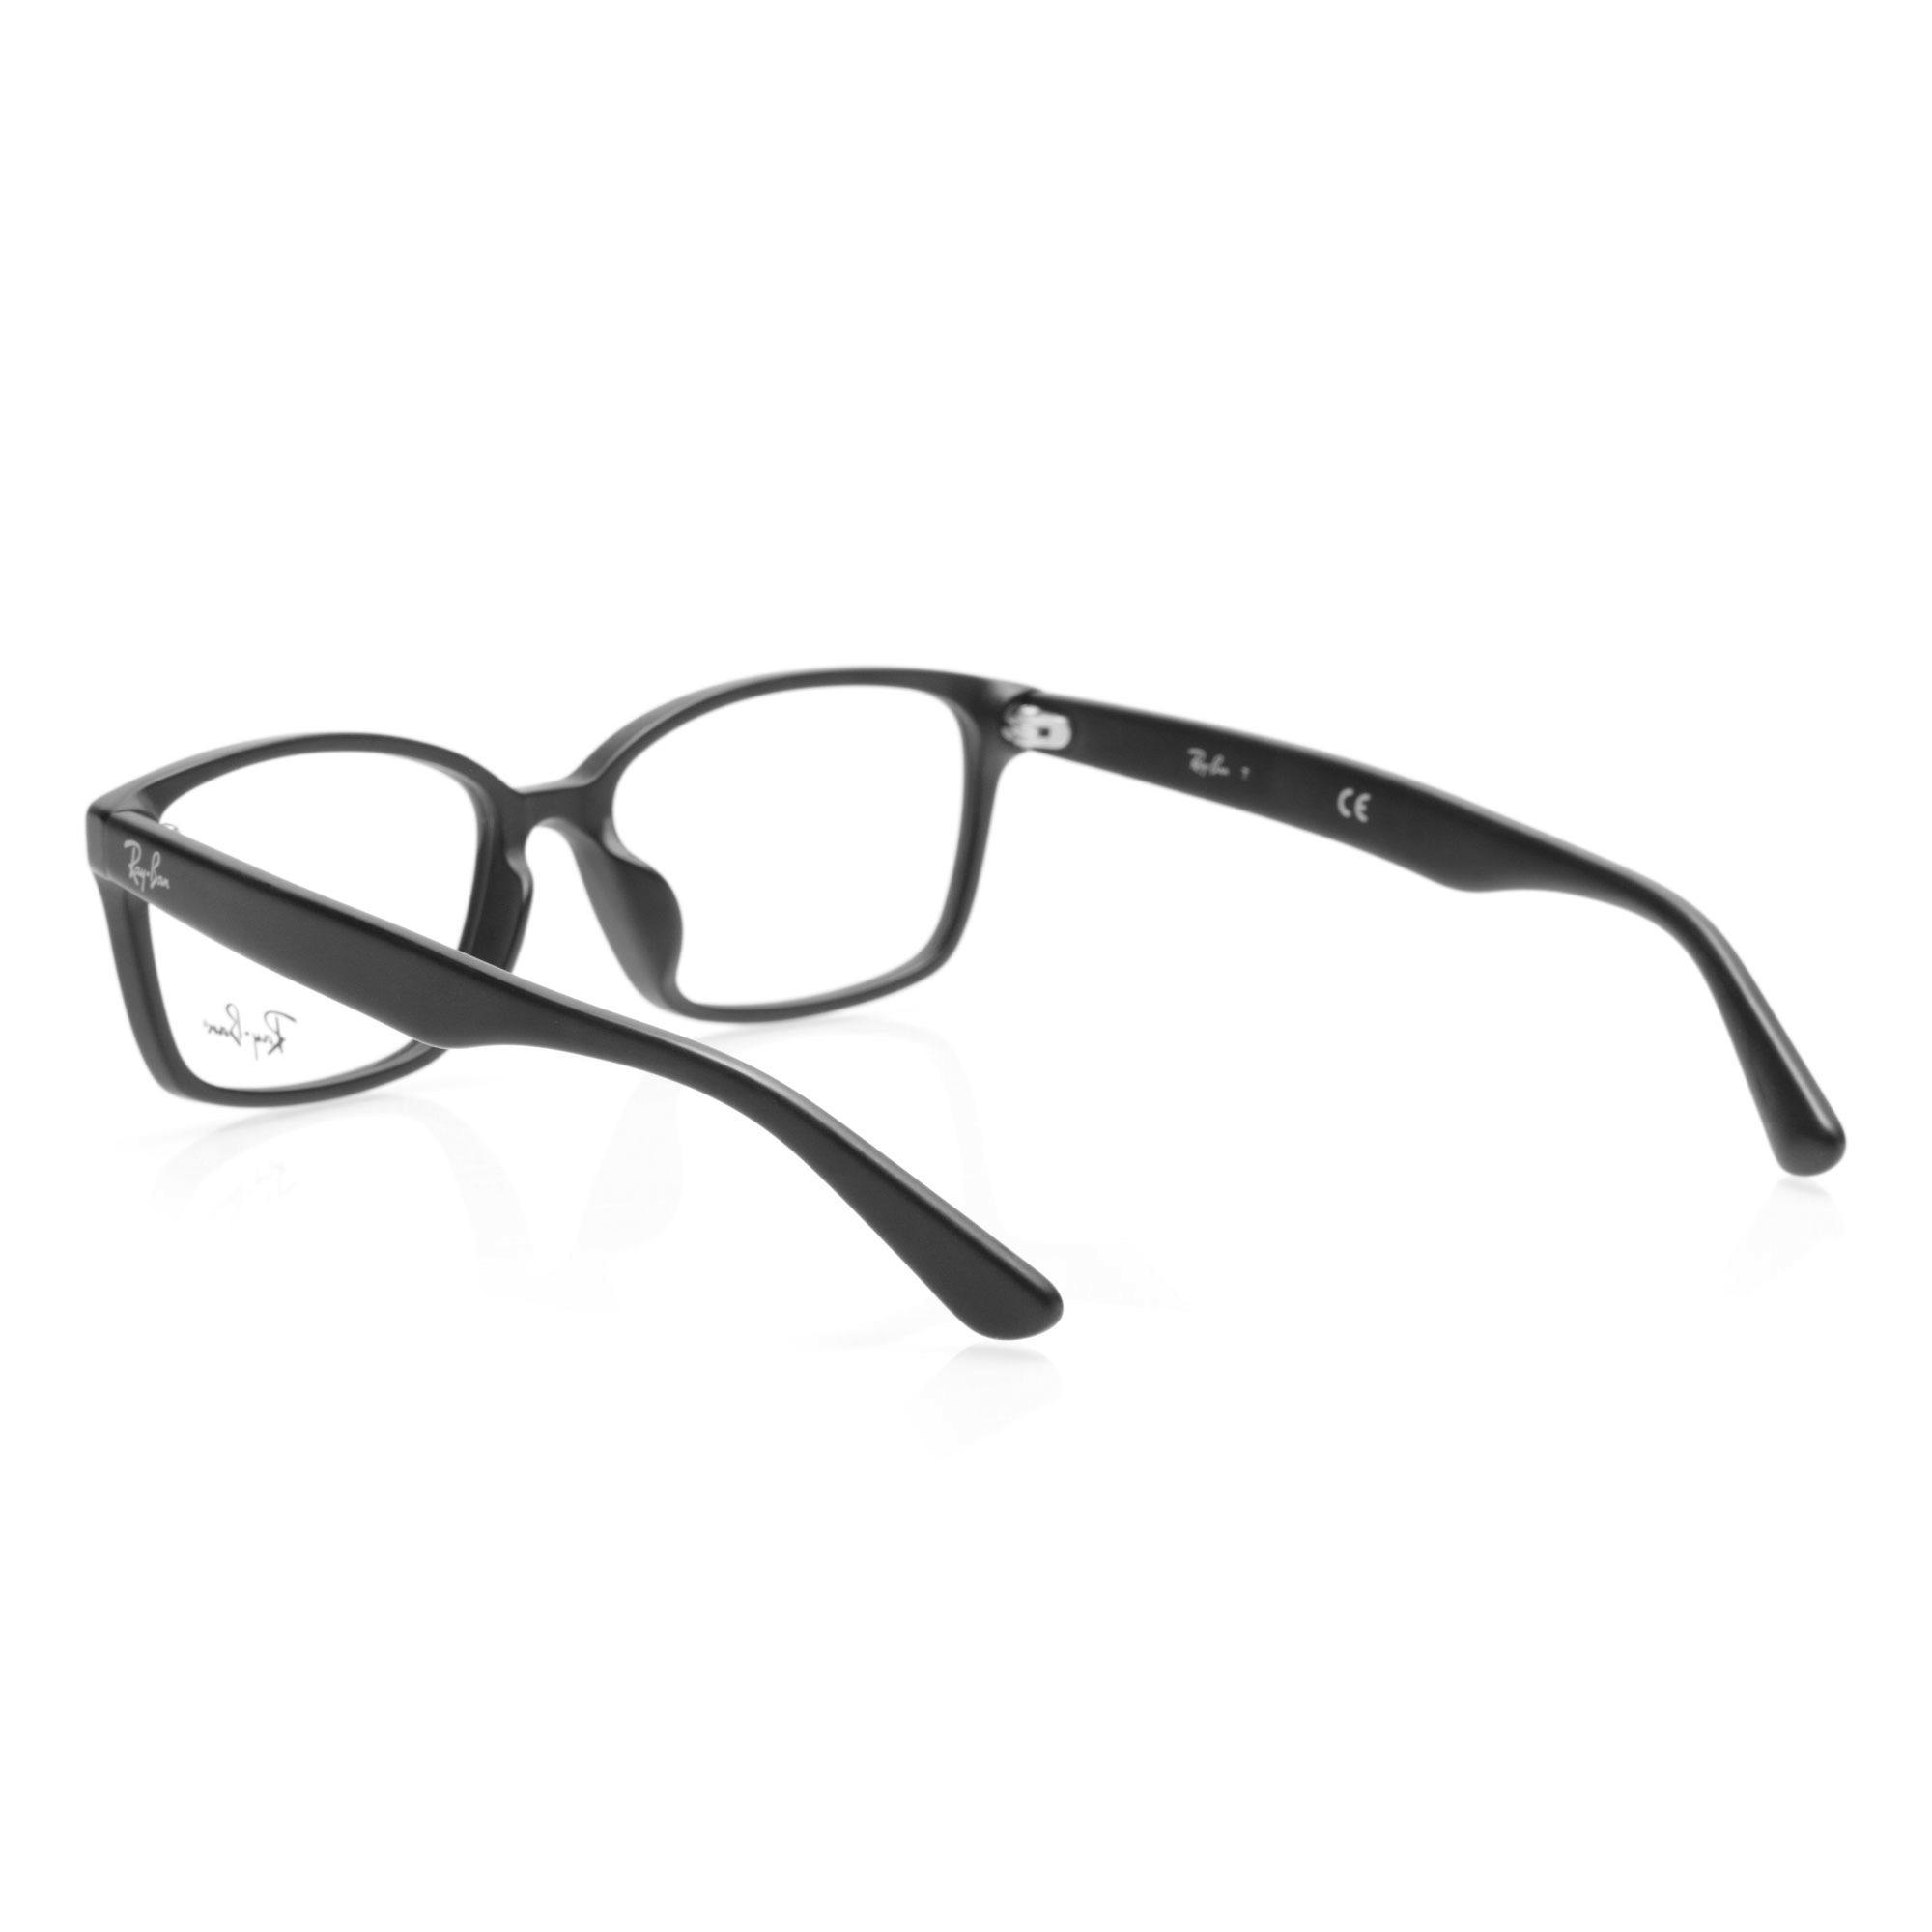 精龙眼镜加盟和其他保健加盟品牌有哪些区别？精龙眼镜品牌优势在哪里？